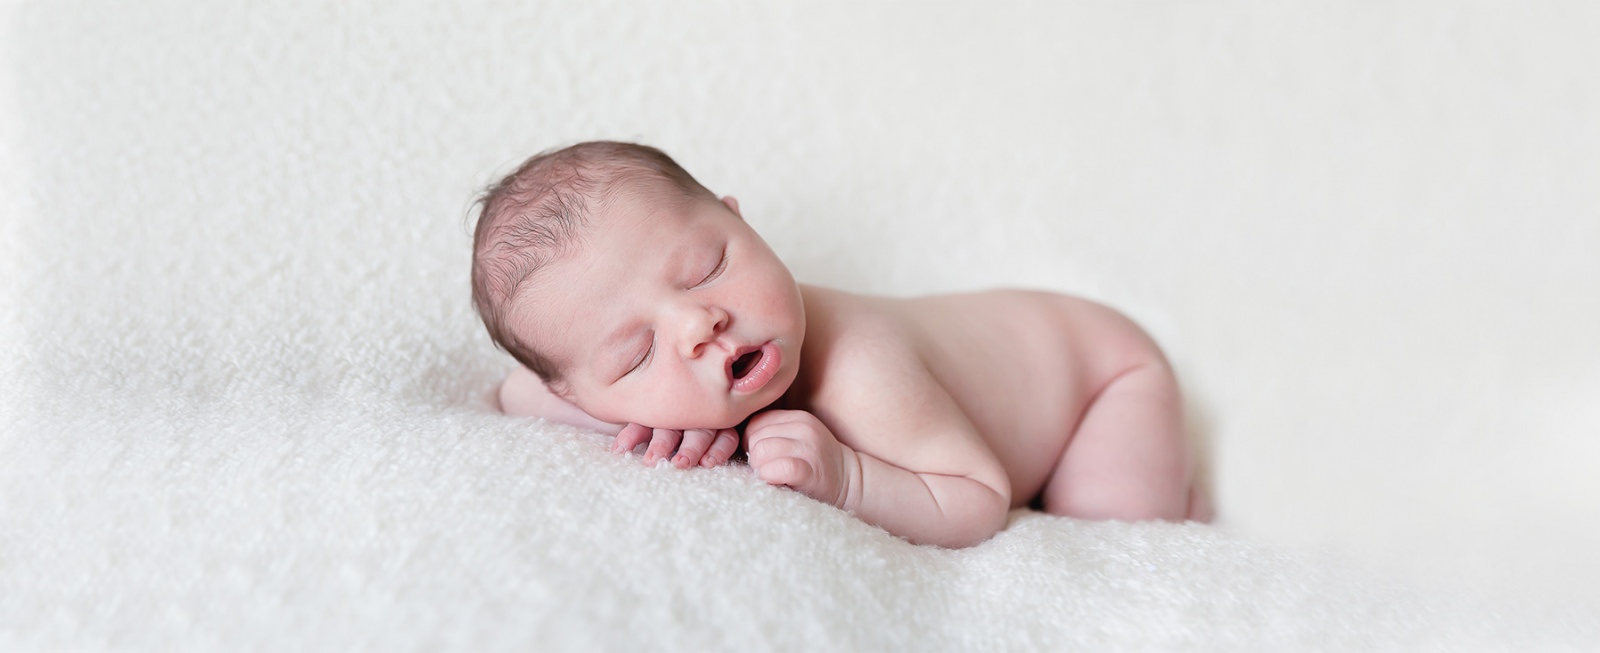 Il y a un bébé endormi posé sur le ventre la tete posée sur une de ses mains sur un plaid de couleur beige.